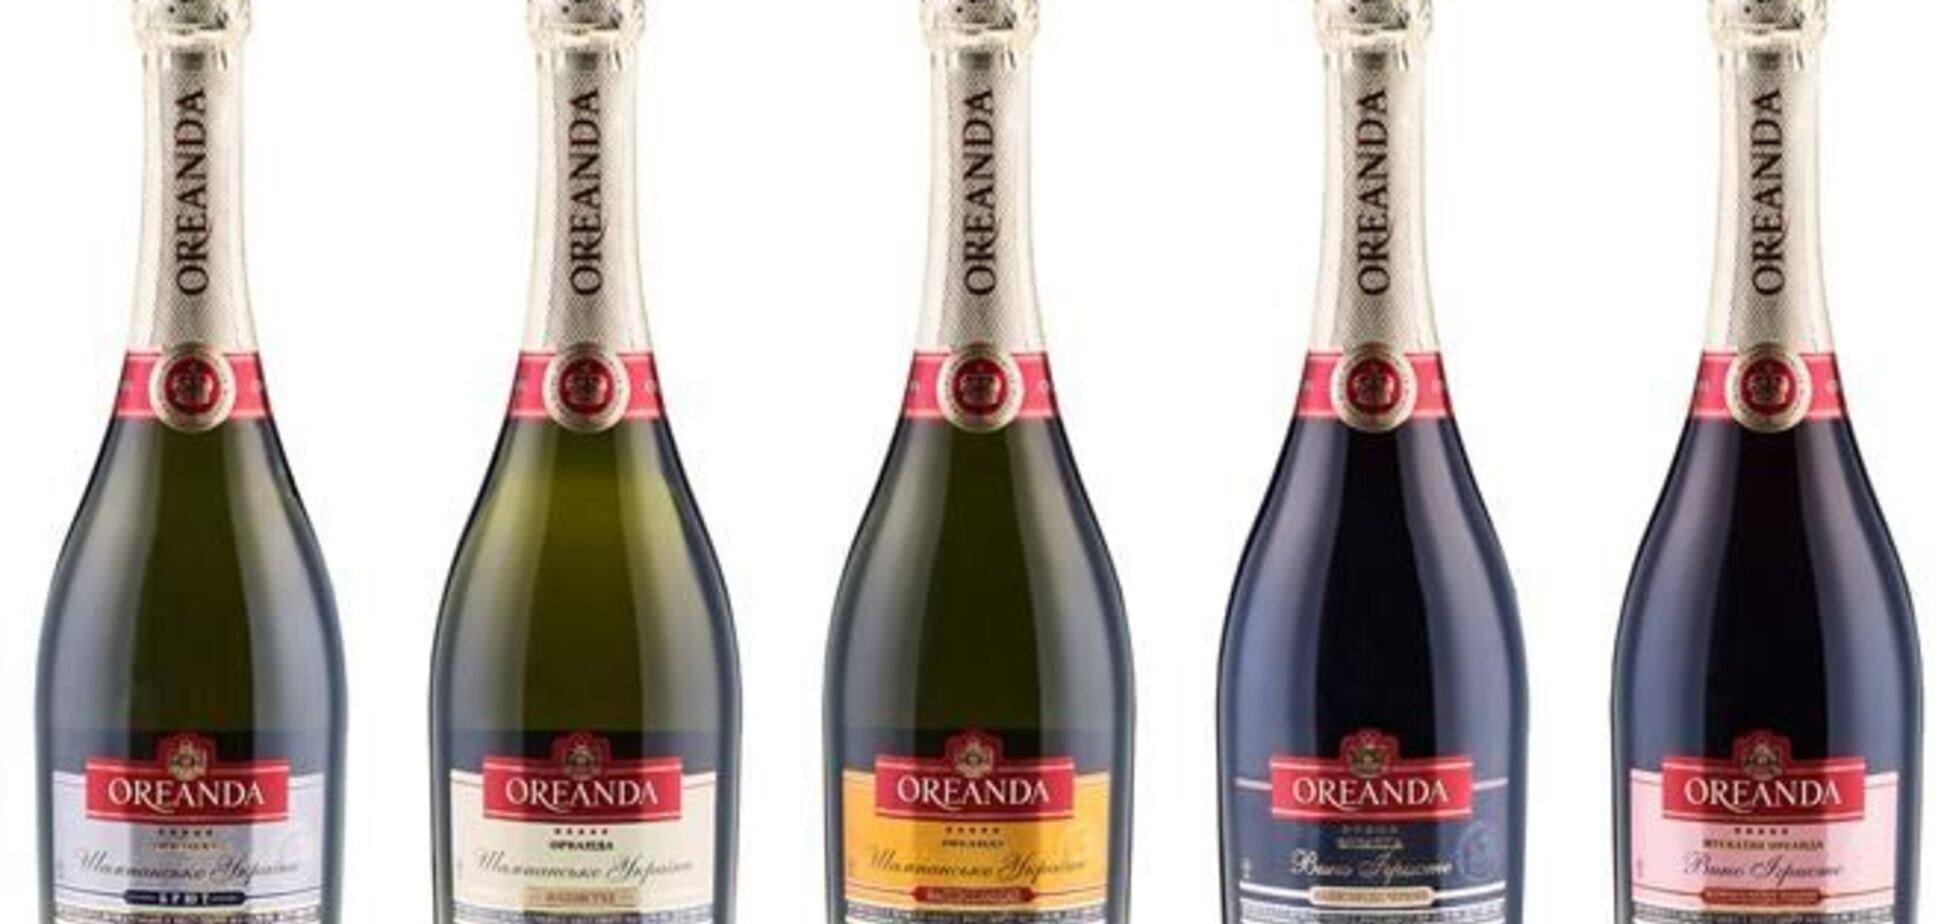 По результатам 10 месяцев 2013 года продажи украинского шампанского 'Oreanda' увеличились на 30%